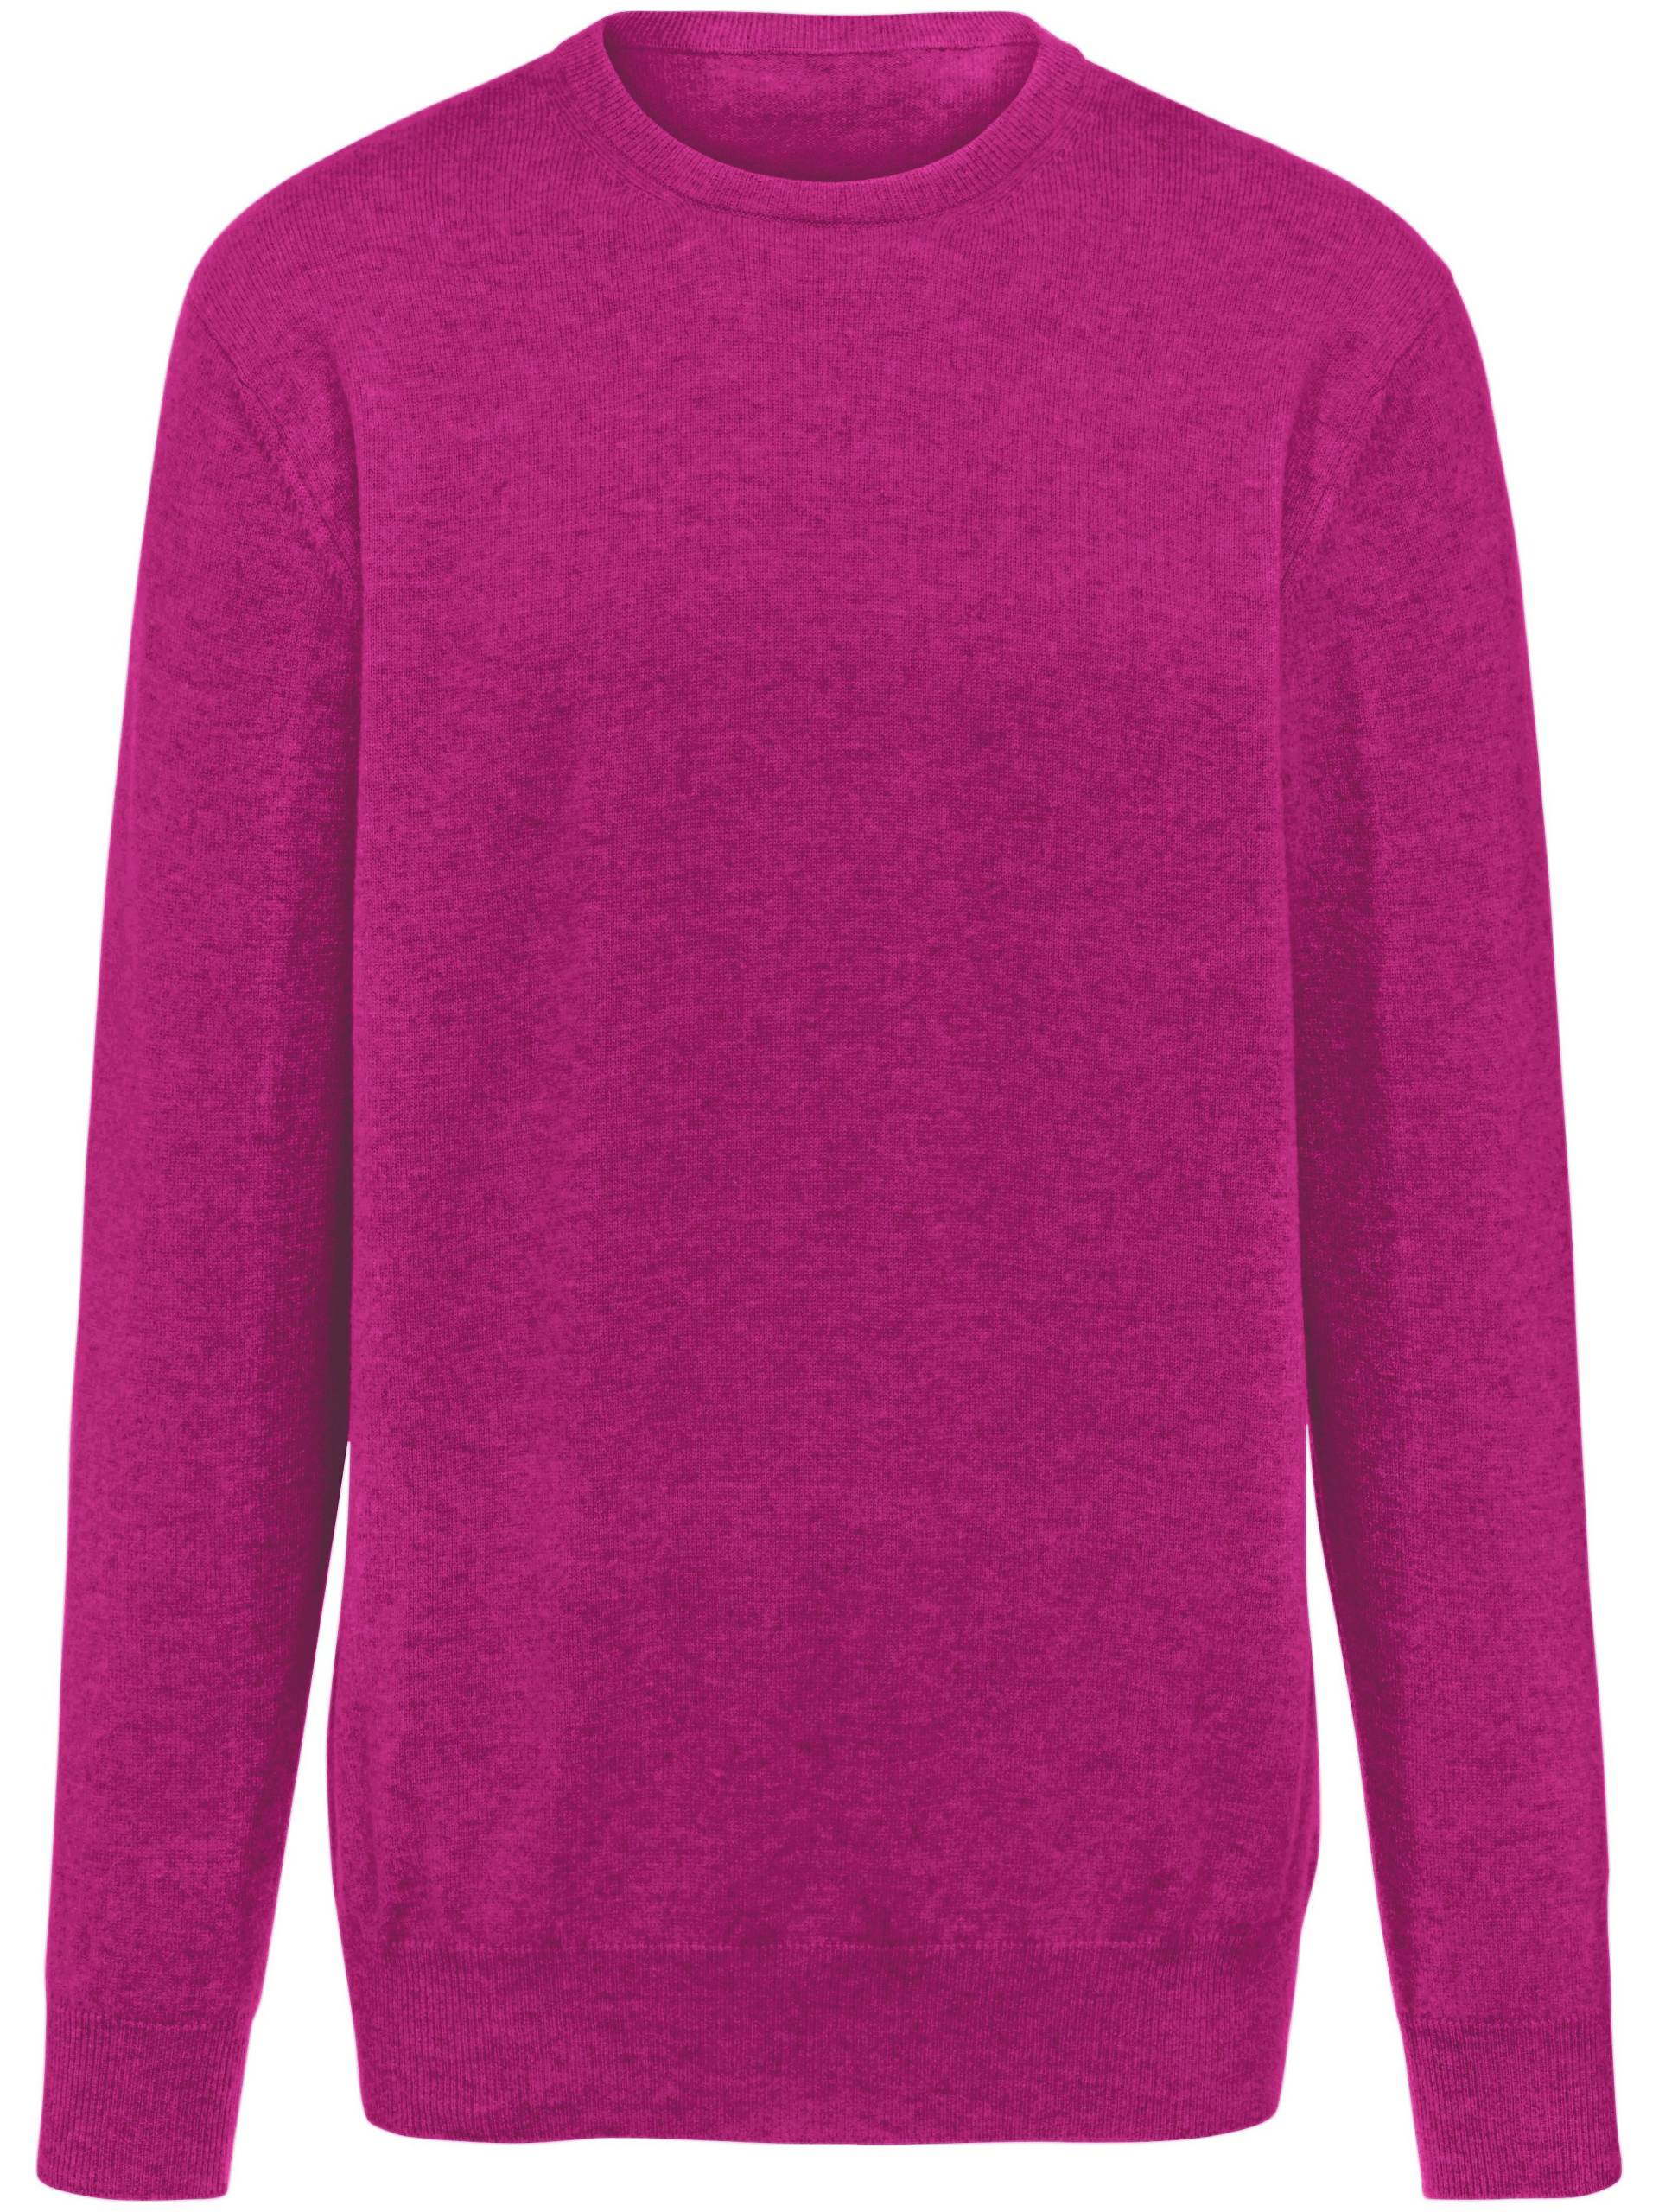 Pullover aus 100% Premium-Kaschmir Modell Ralph Peter Hahn Cashmere pink Größe: 56 von Peter Hahn Cashmere